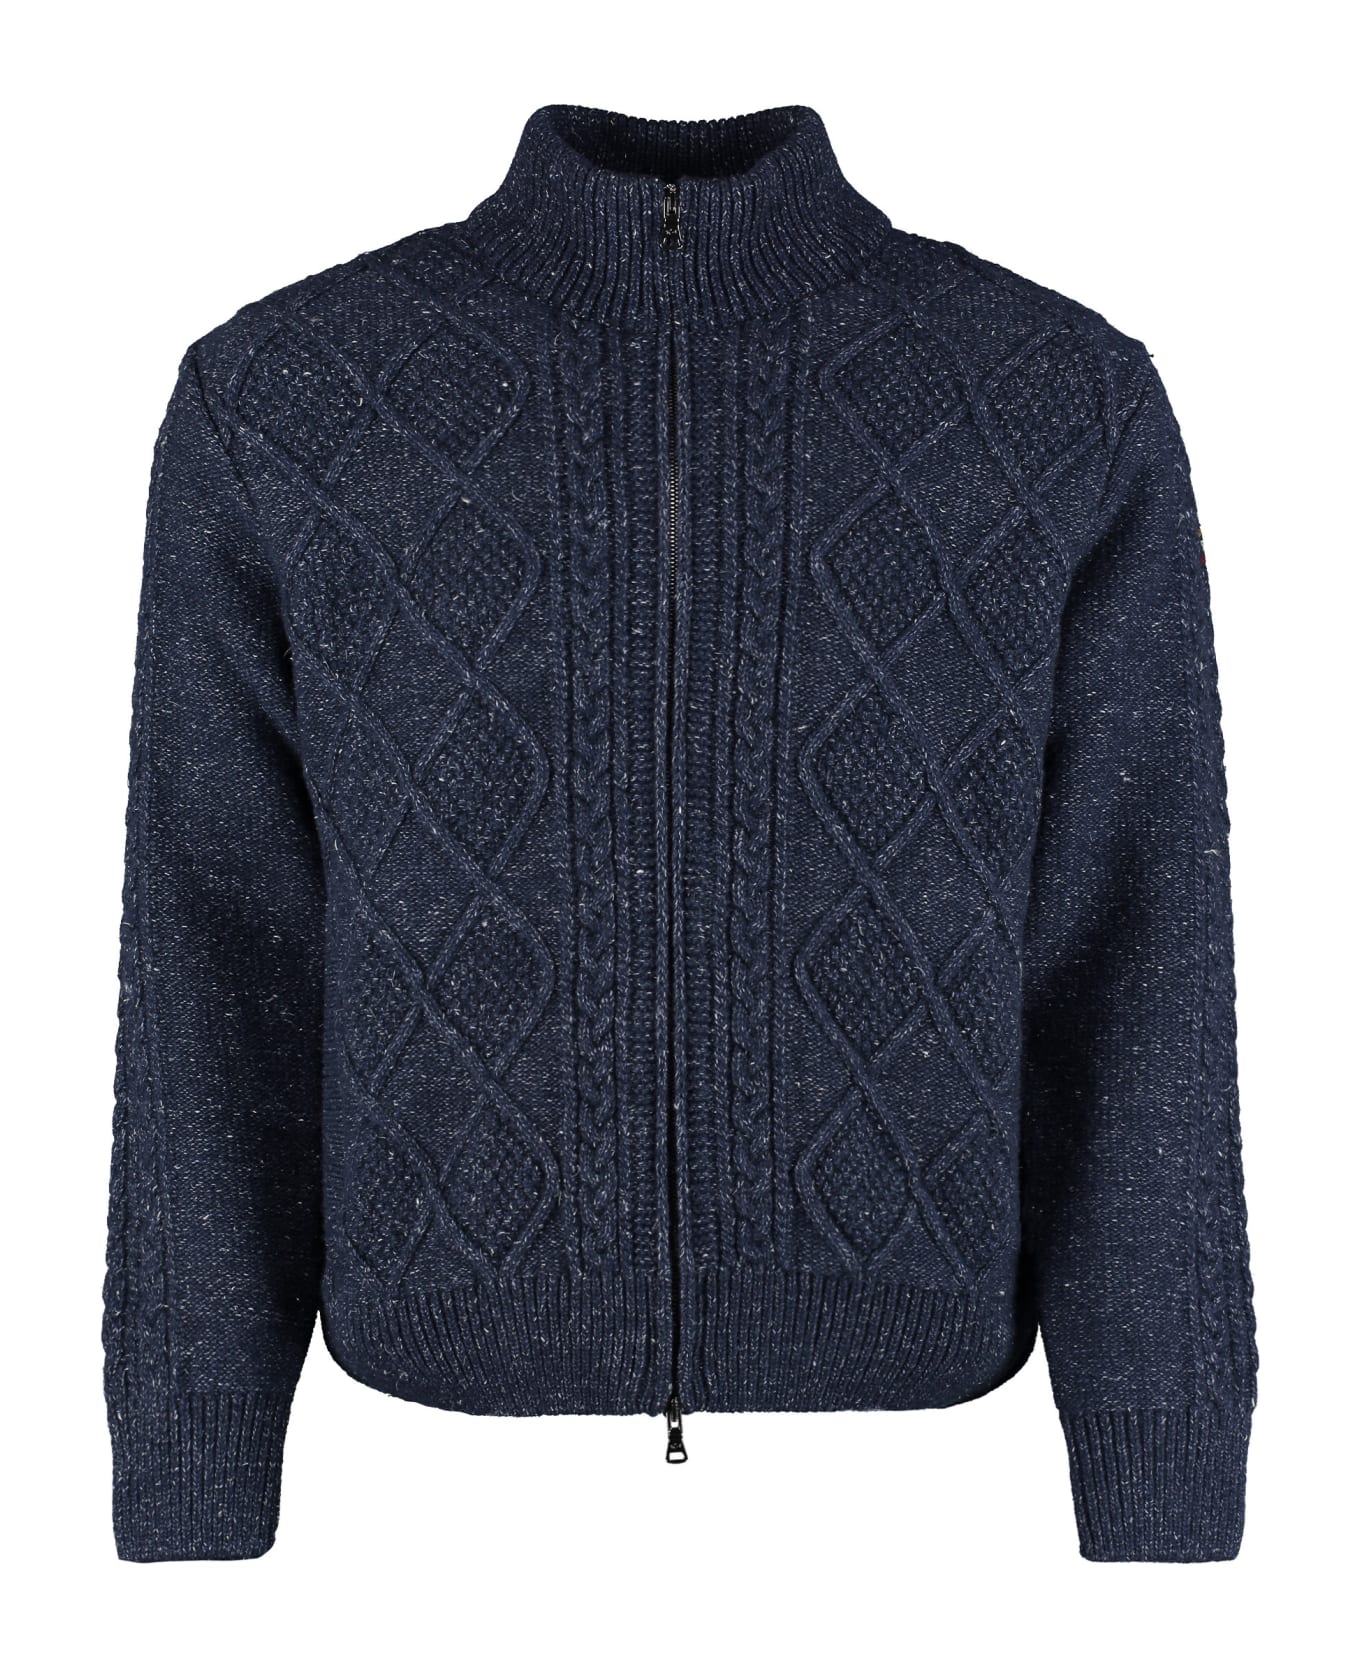 Paul&Shark Wool Blend Turtleneck Sweater - blue ニットウェア